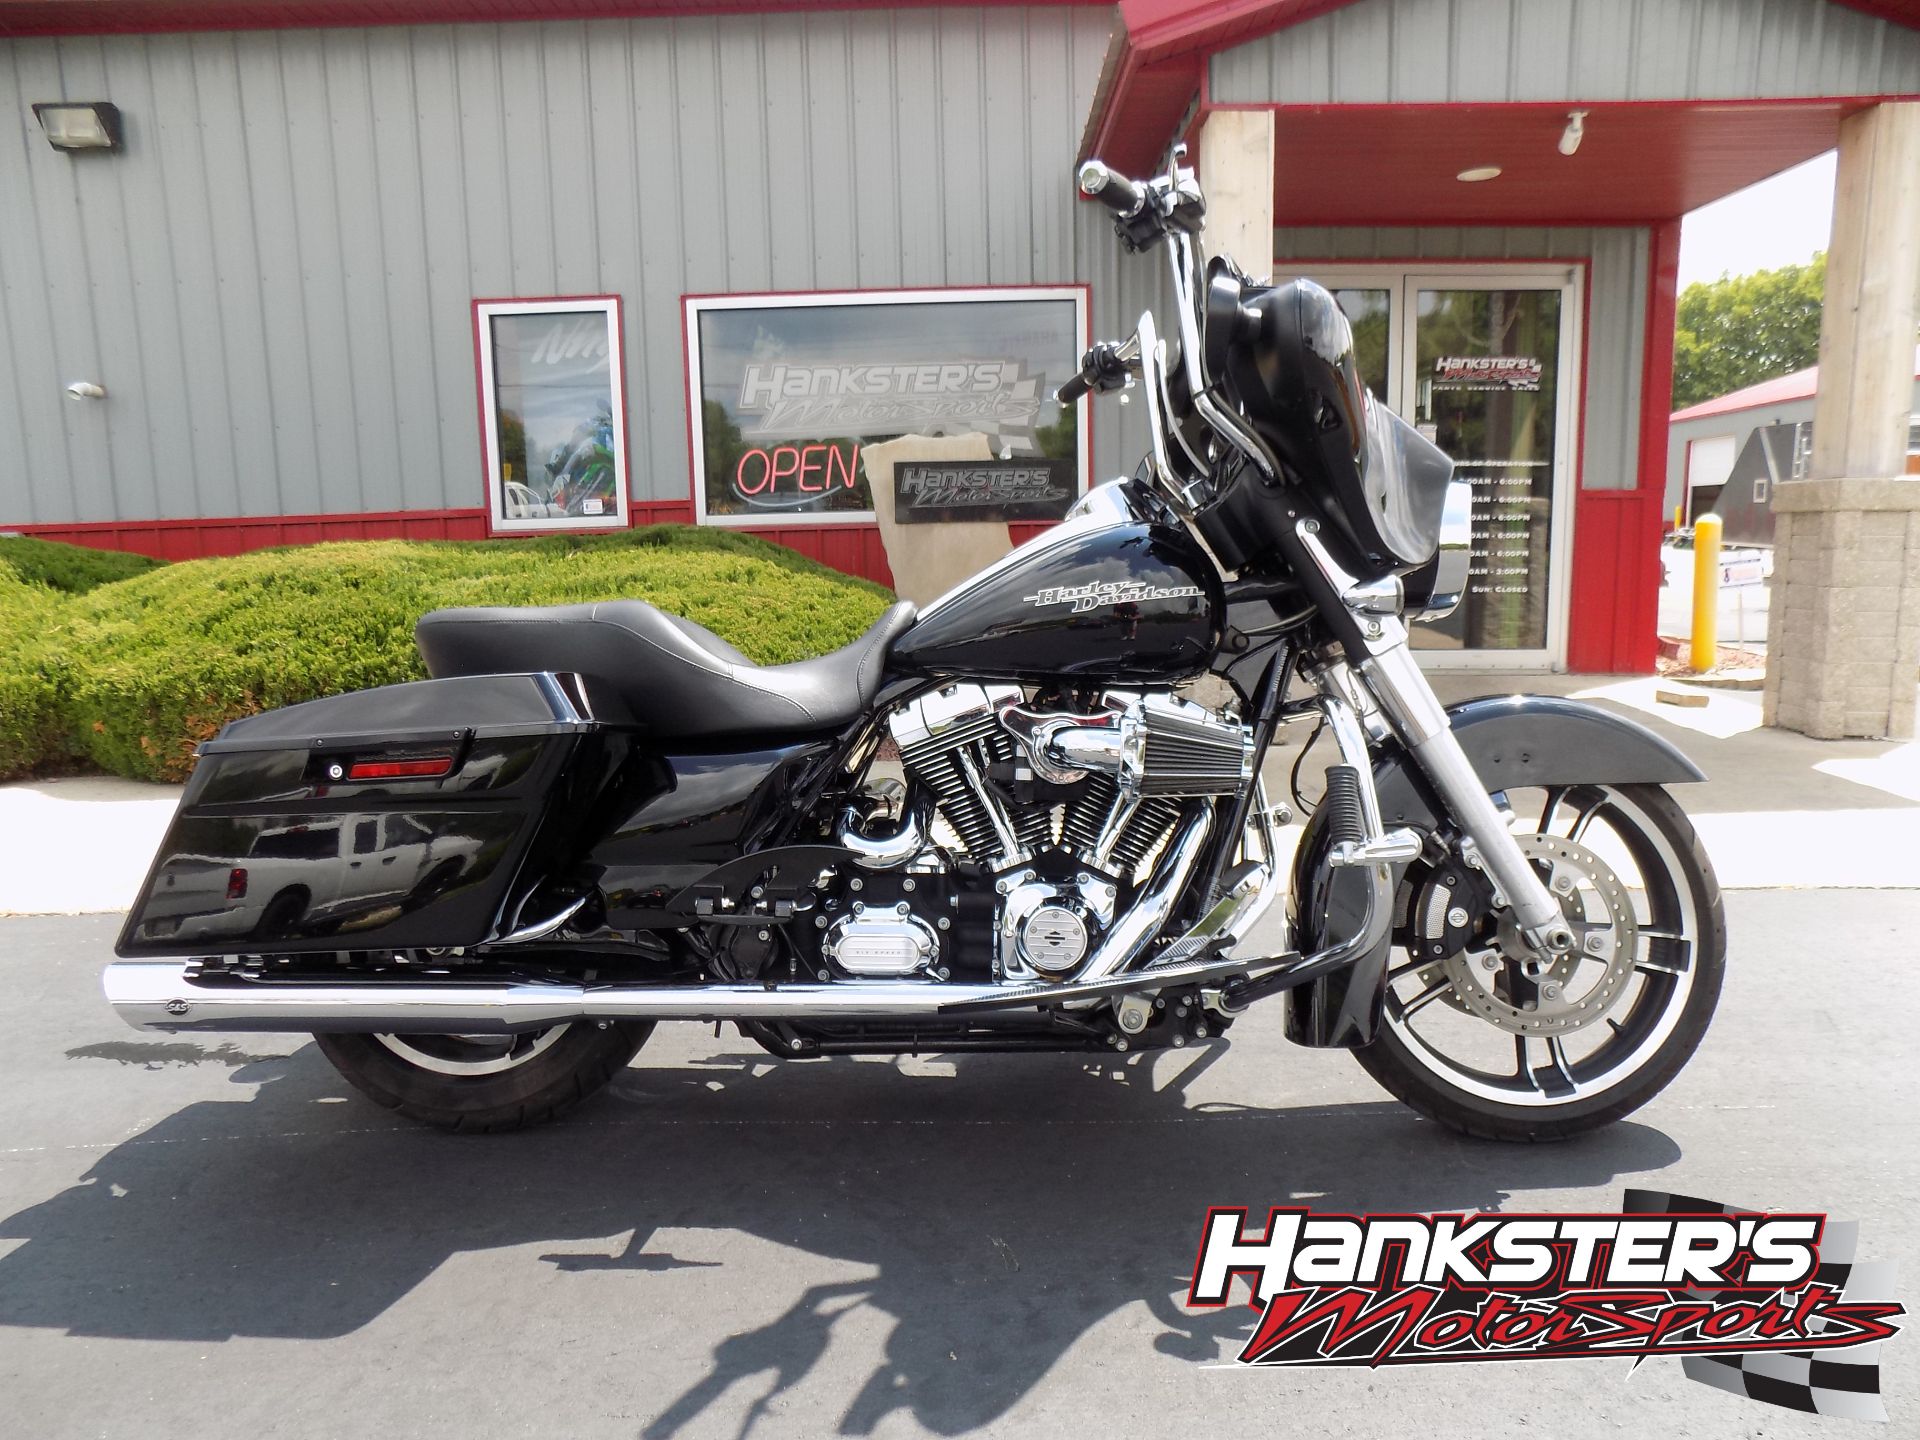 2012 Harley-Davidson Street Glide® in Janesville, Wisconsin - Photo 1